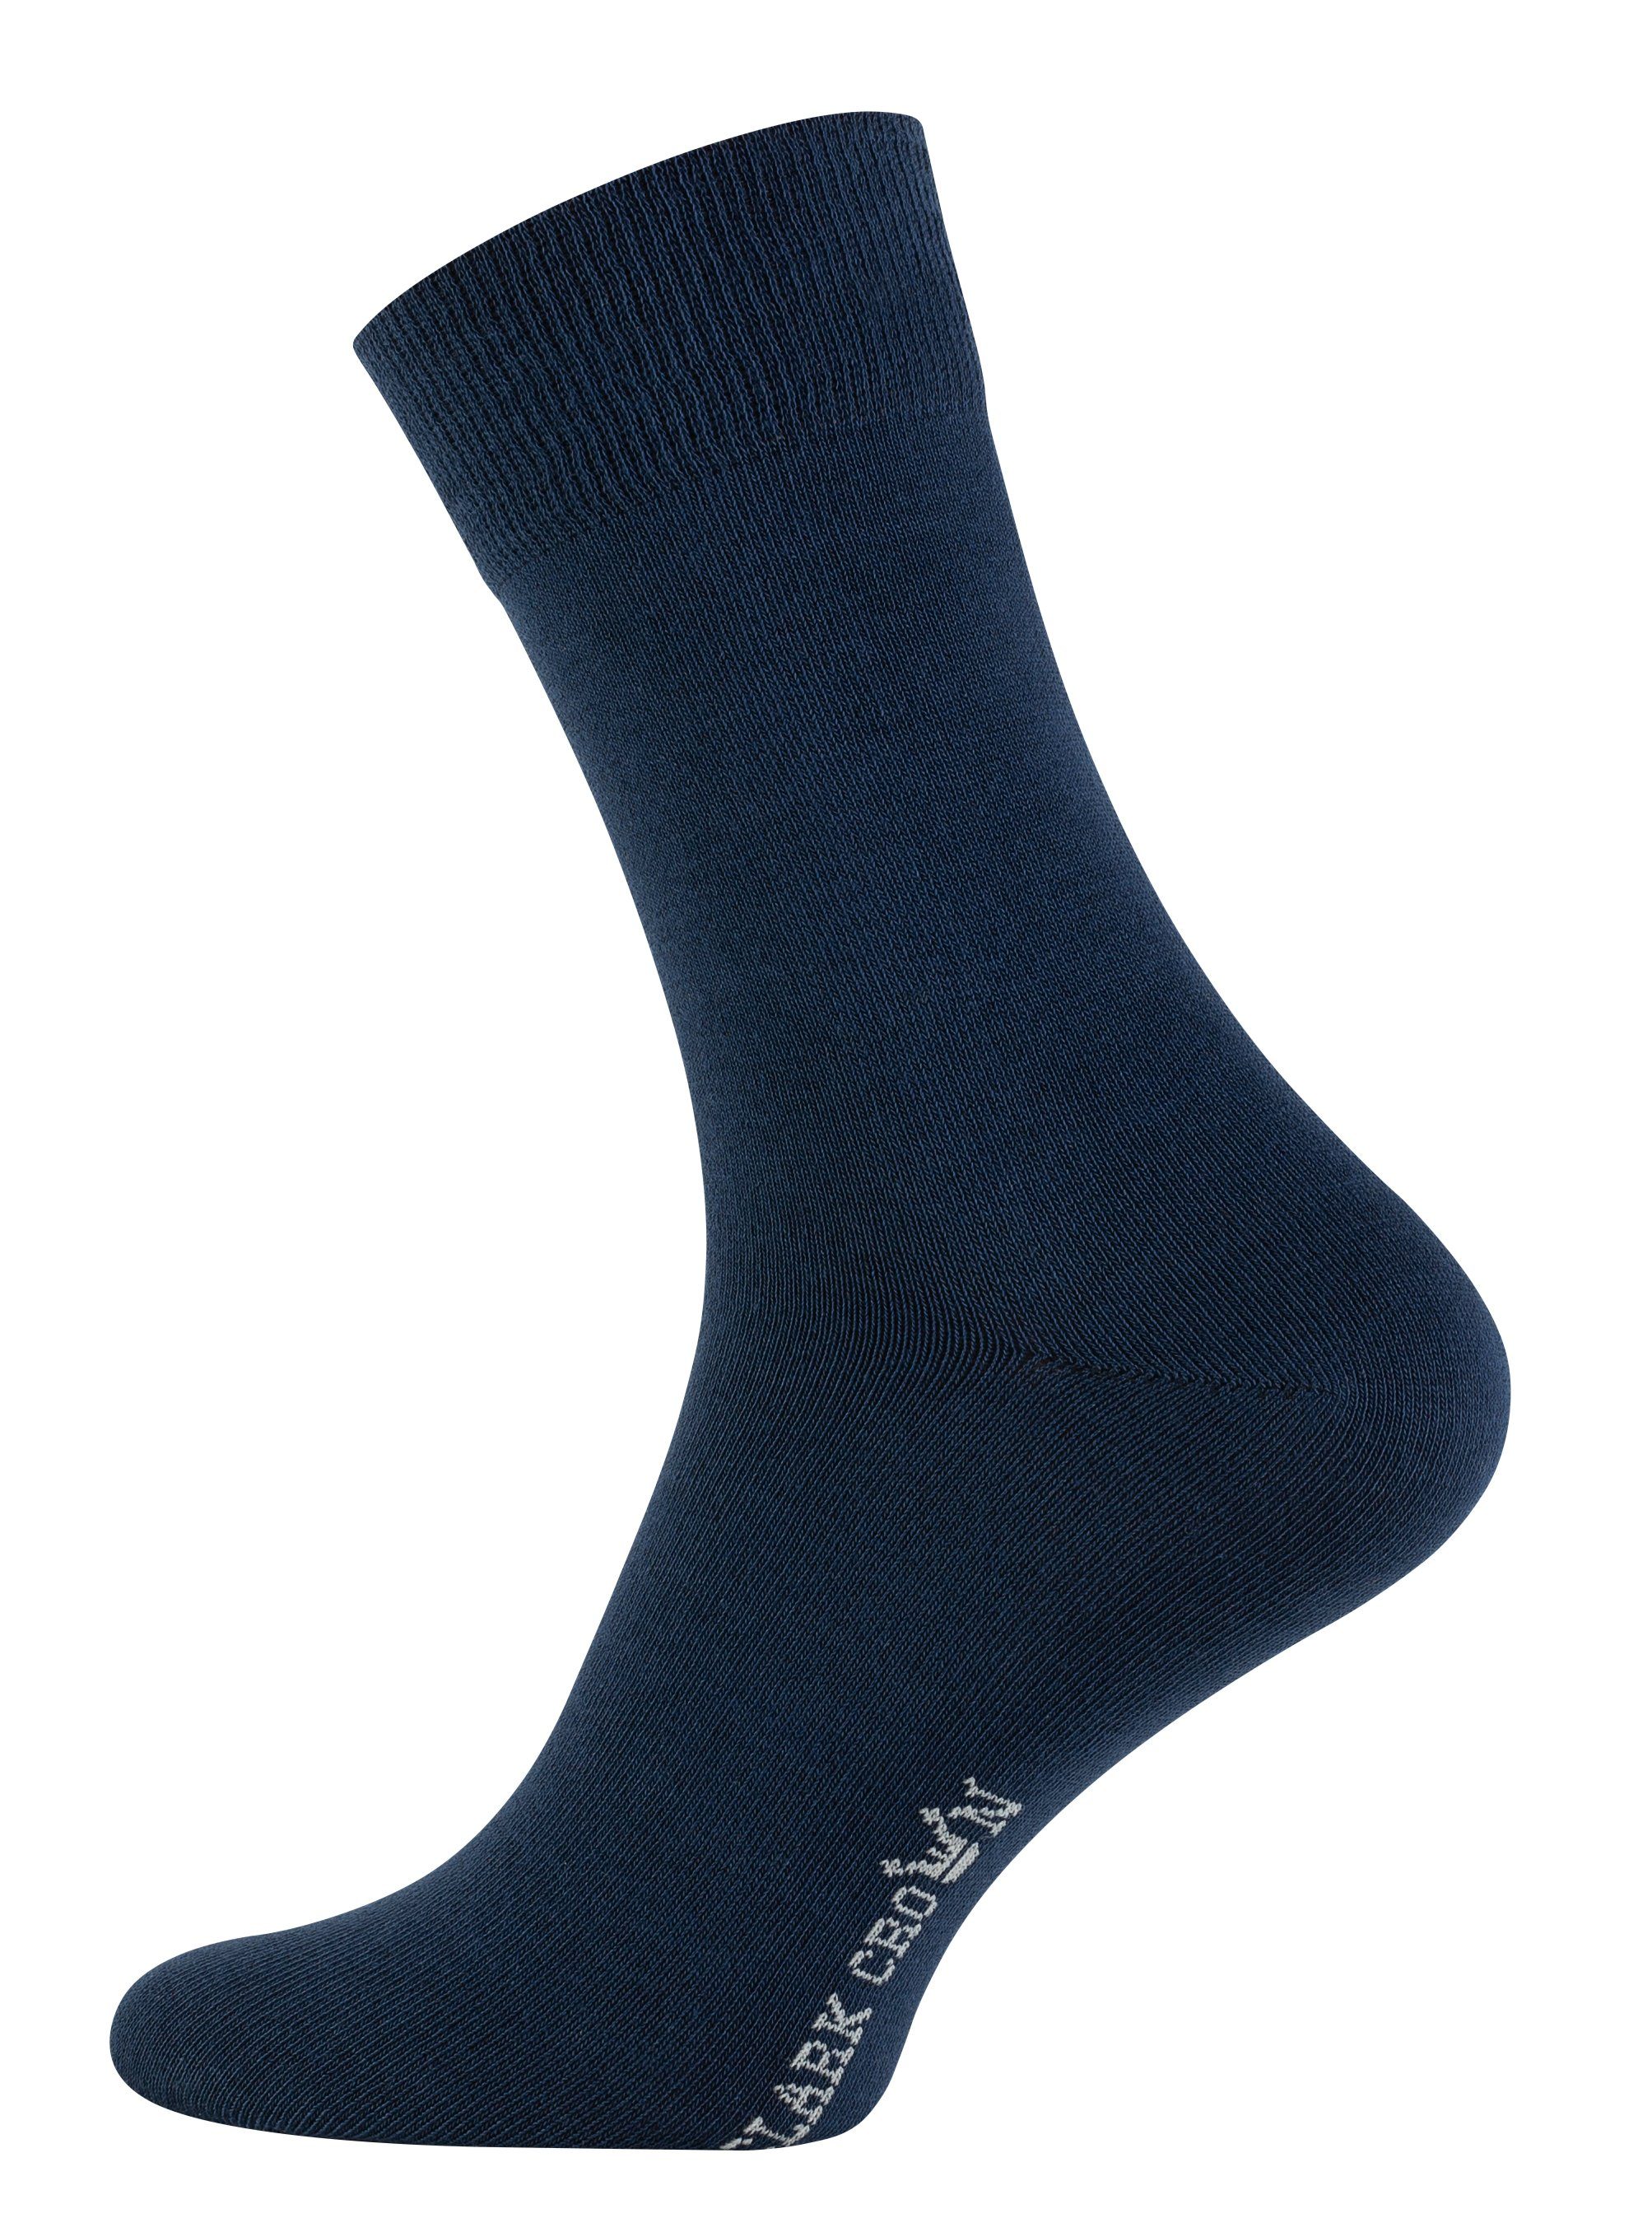 Clark Crown® in blau grau, angenehmer (6-Paar) Socken schwarz, Bio-Baumwollqualität